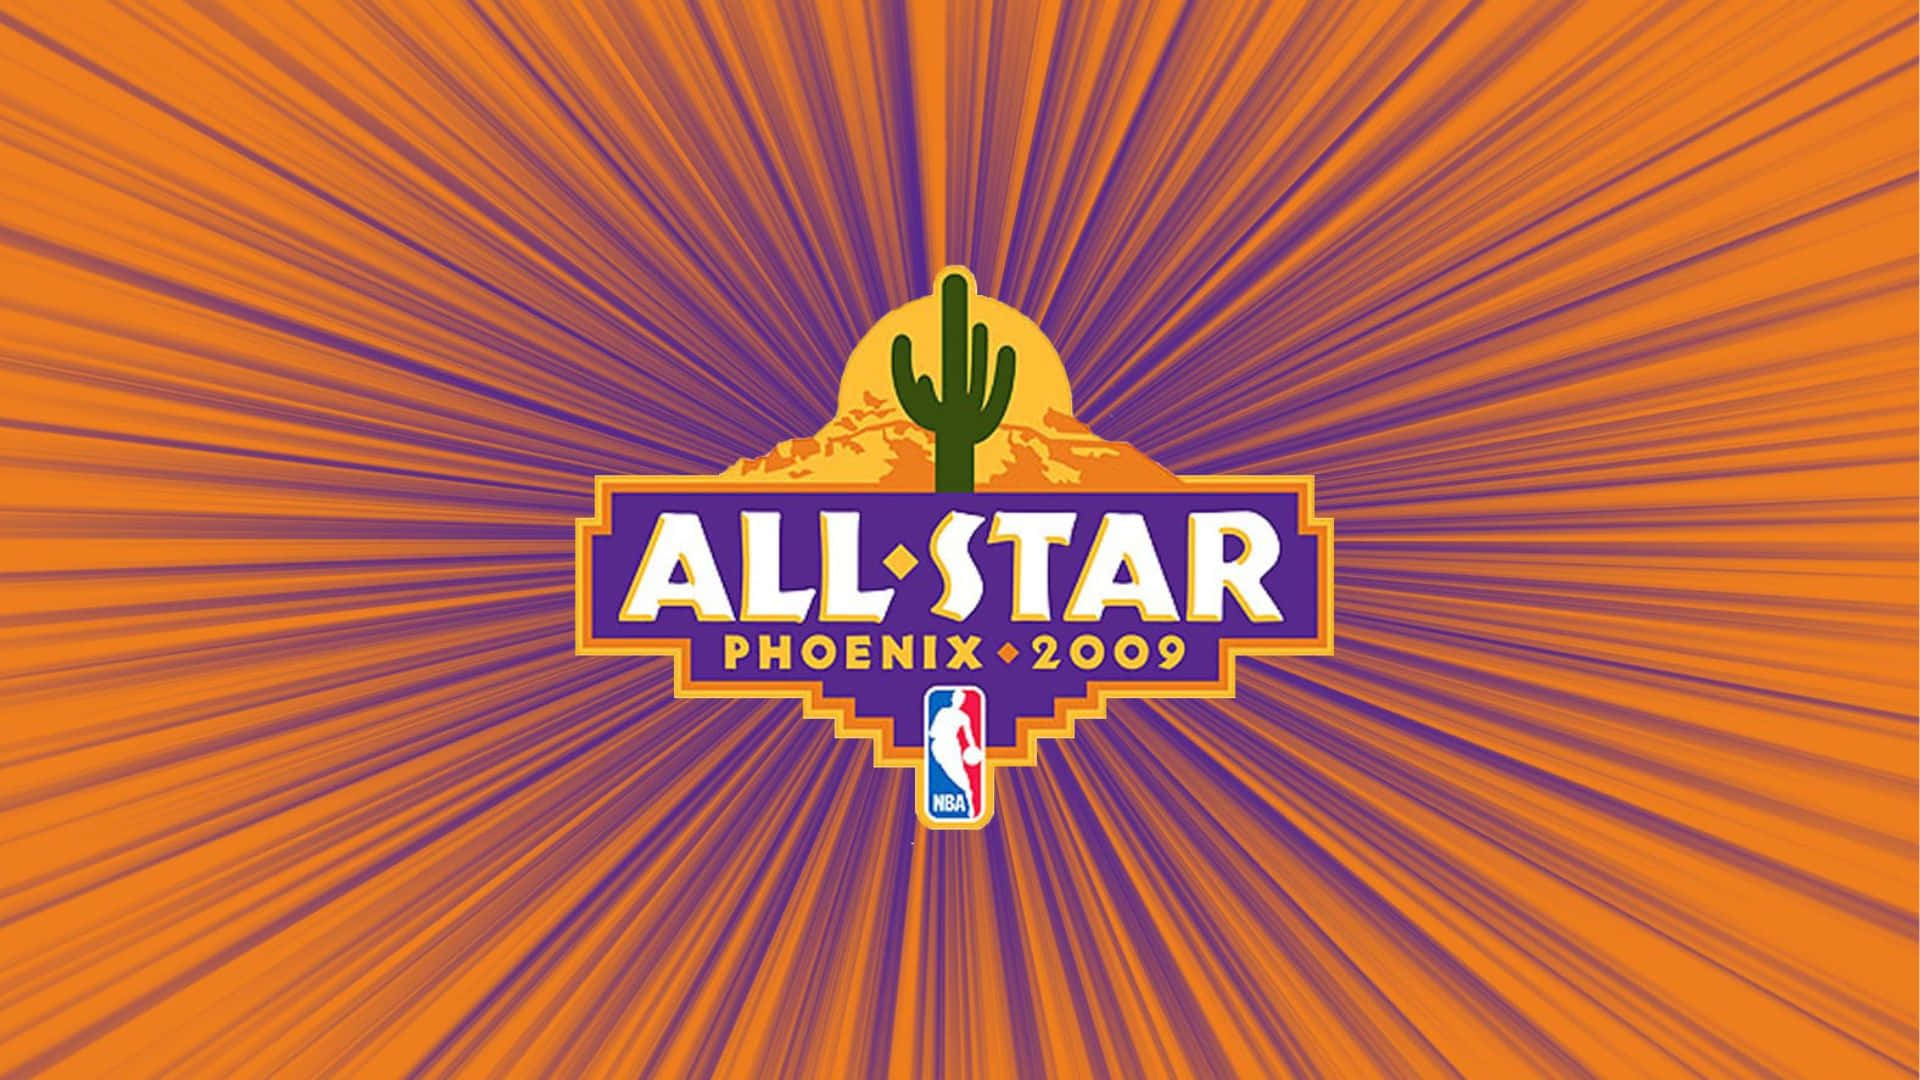 N B A All Star2009 Phoenix Logo Wallpaper